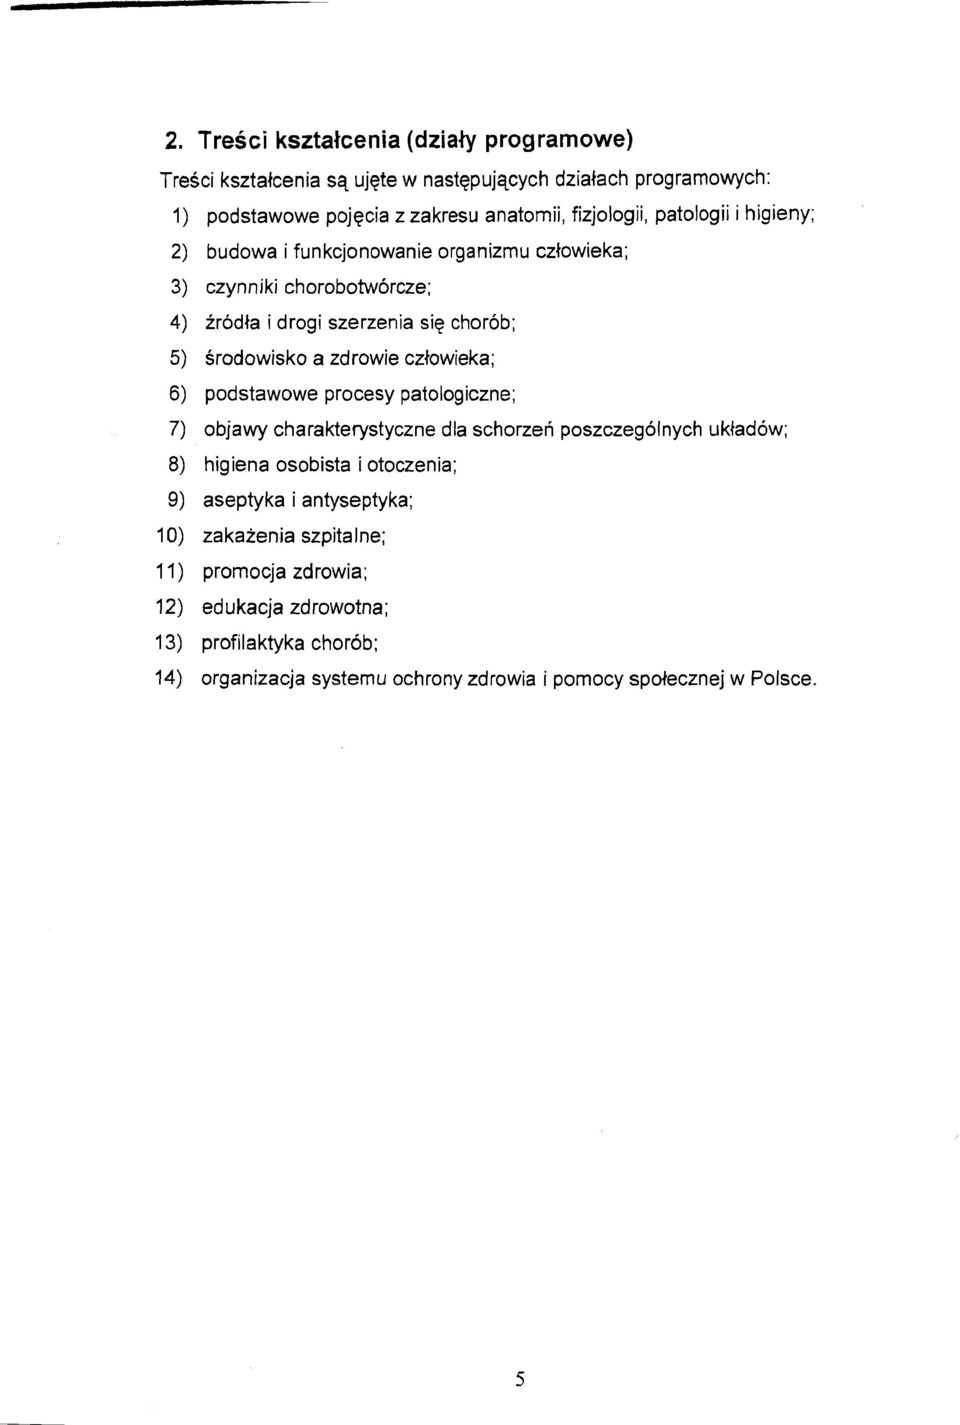 czlowieka; 6) podstawowe procesy patologiczne; 7) objawy charakterystyczne dla schorzen poszczegolnych ~~kladow; 8) higiena osobista i otoczenia; 9) aseptyka i